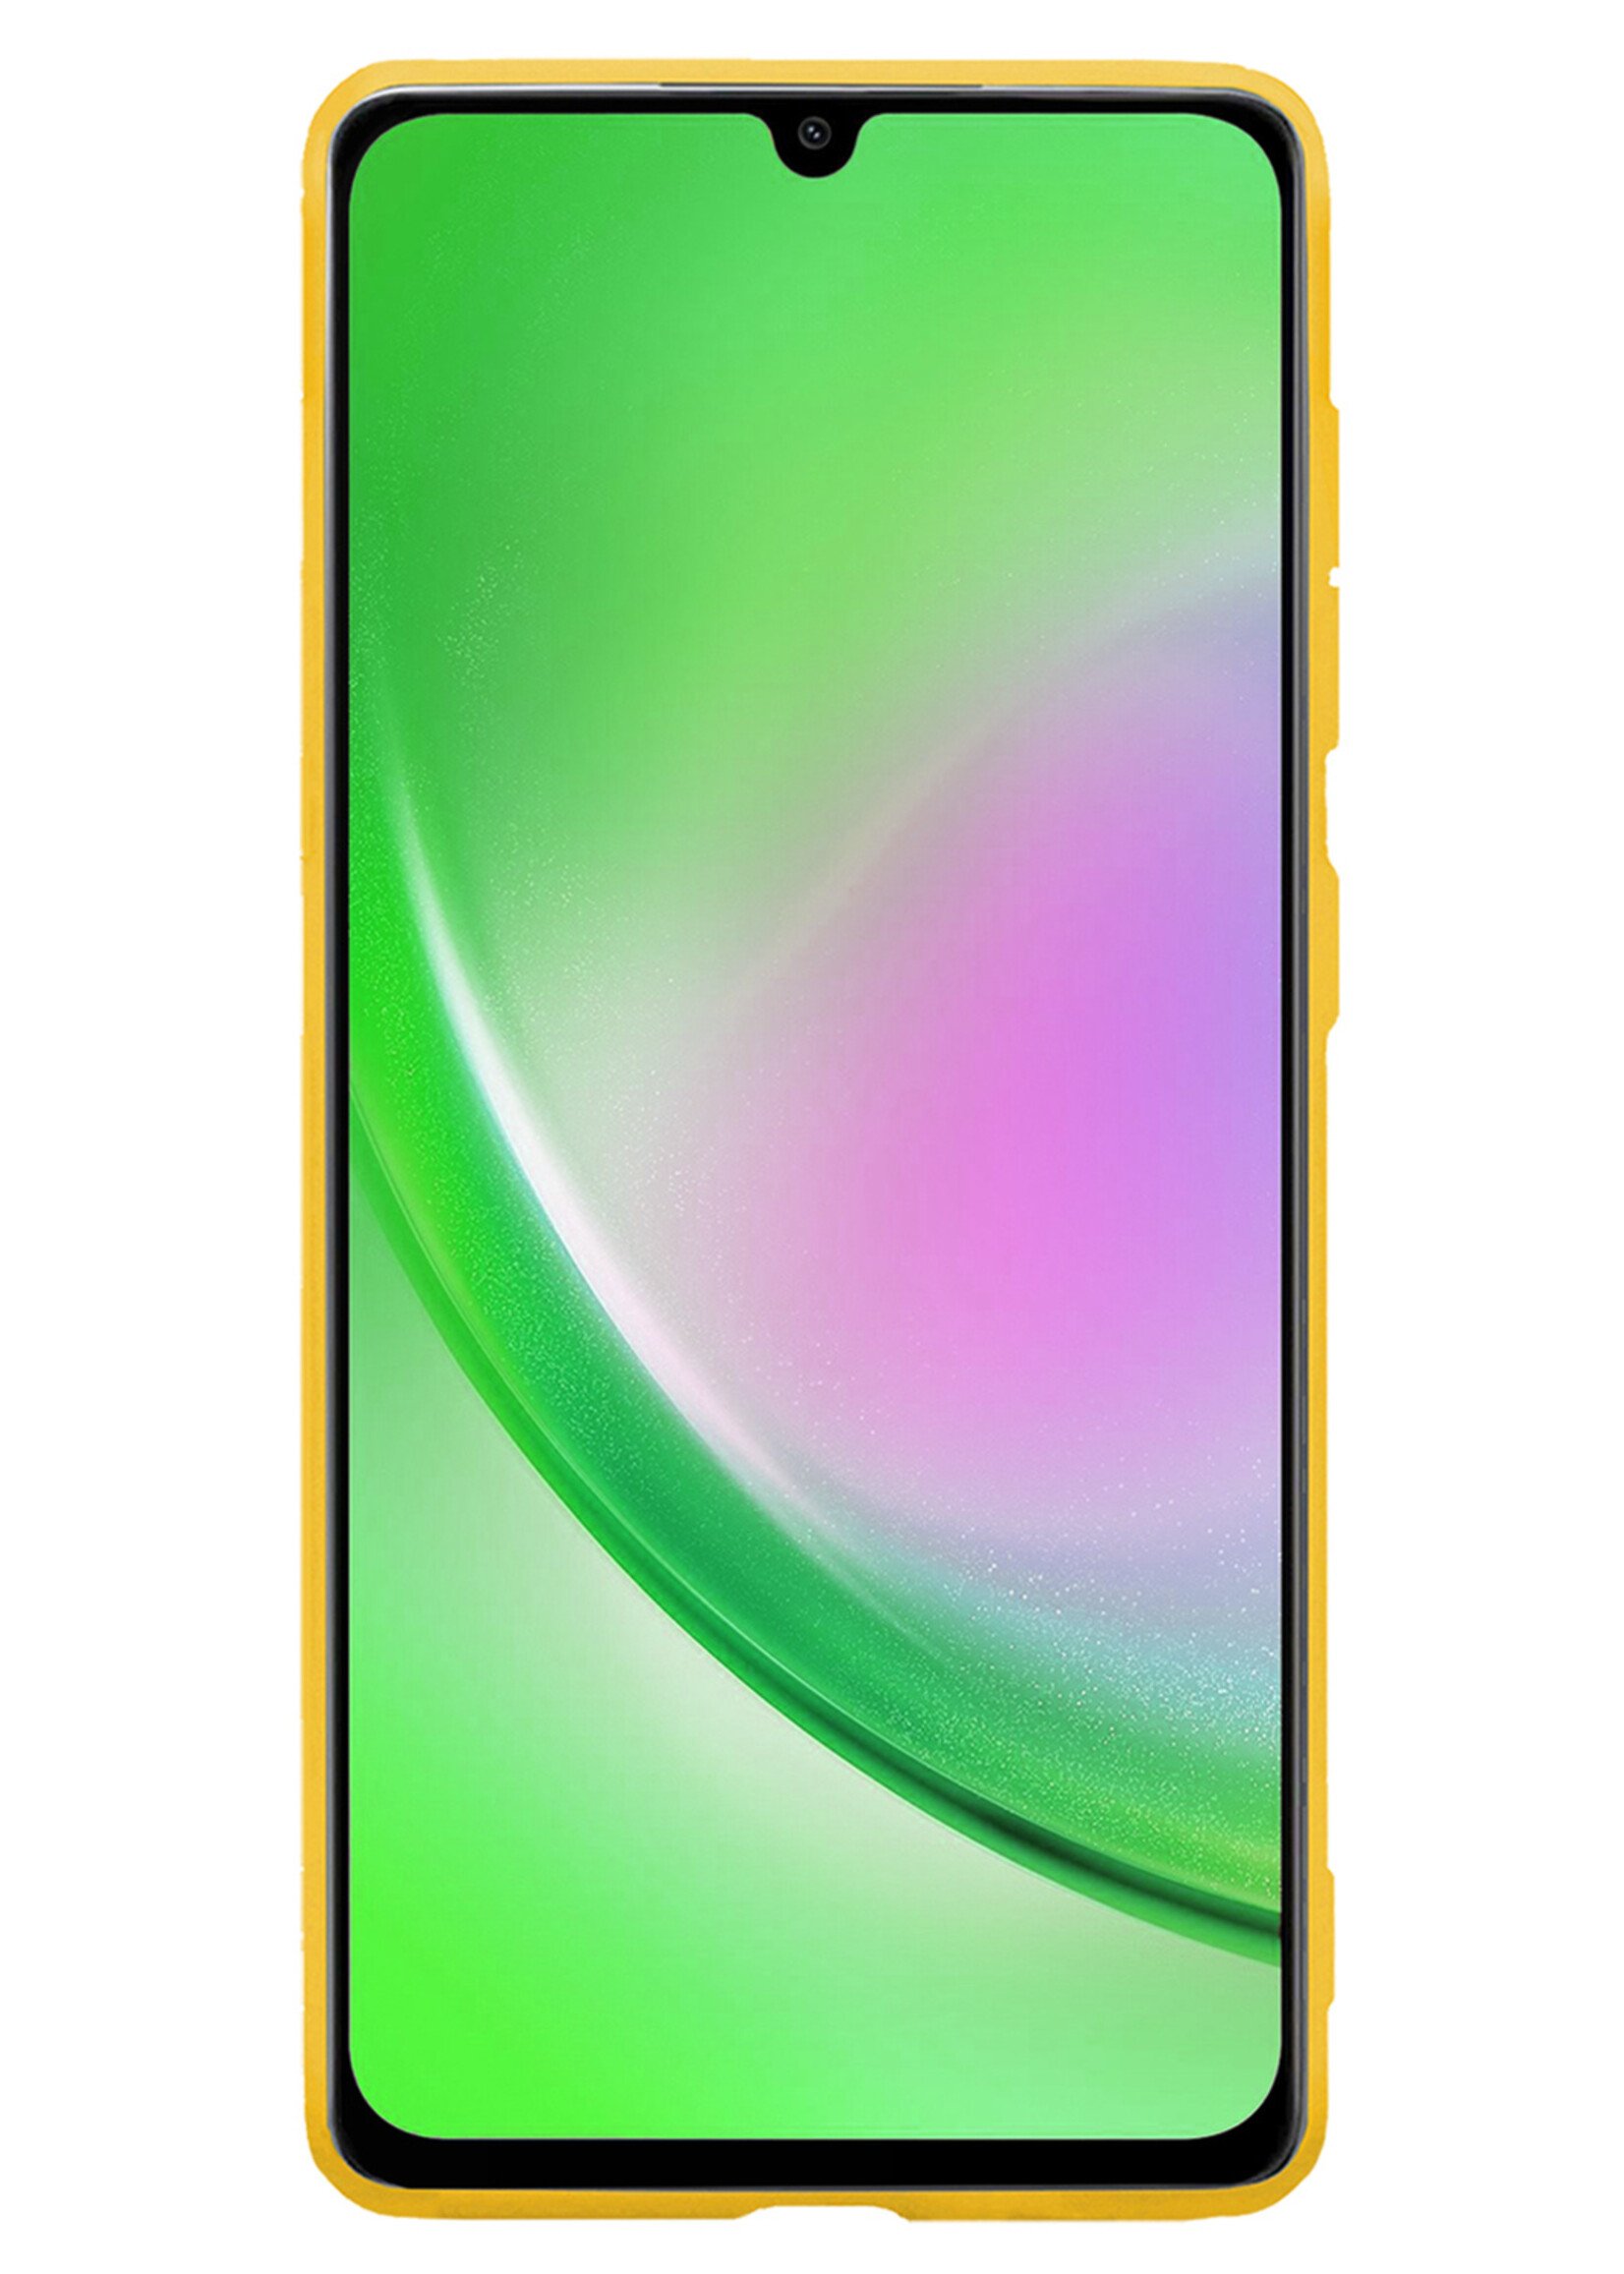 LUQ Hoesje Geschikt voor Samsung A34 Hoesje Siliconen Case - Hoes Geschikt voor Samsung Galaxy A34 Hoes Siliconen - Geel - 2 Stuks